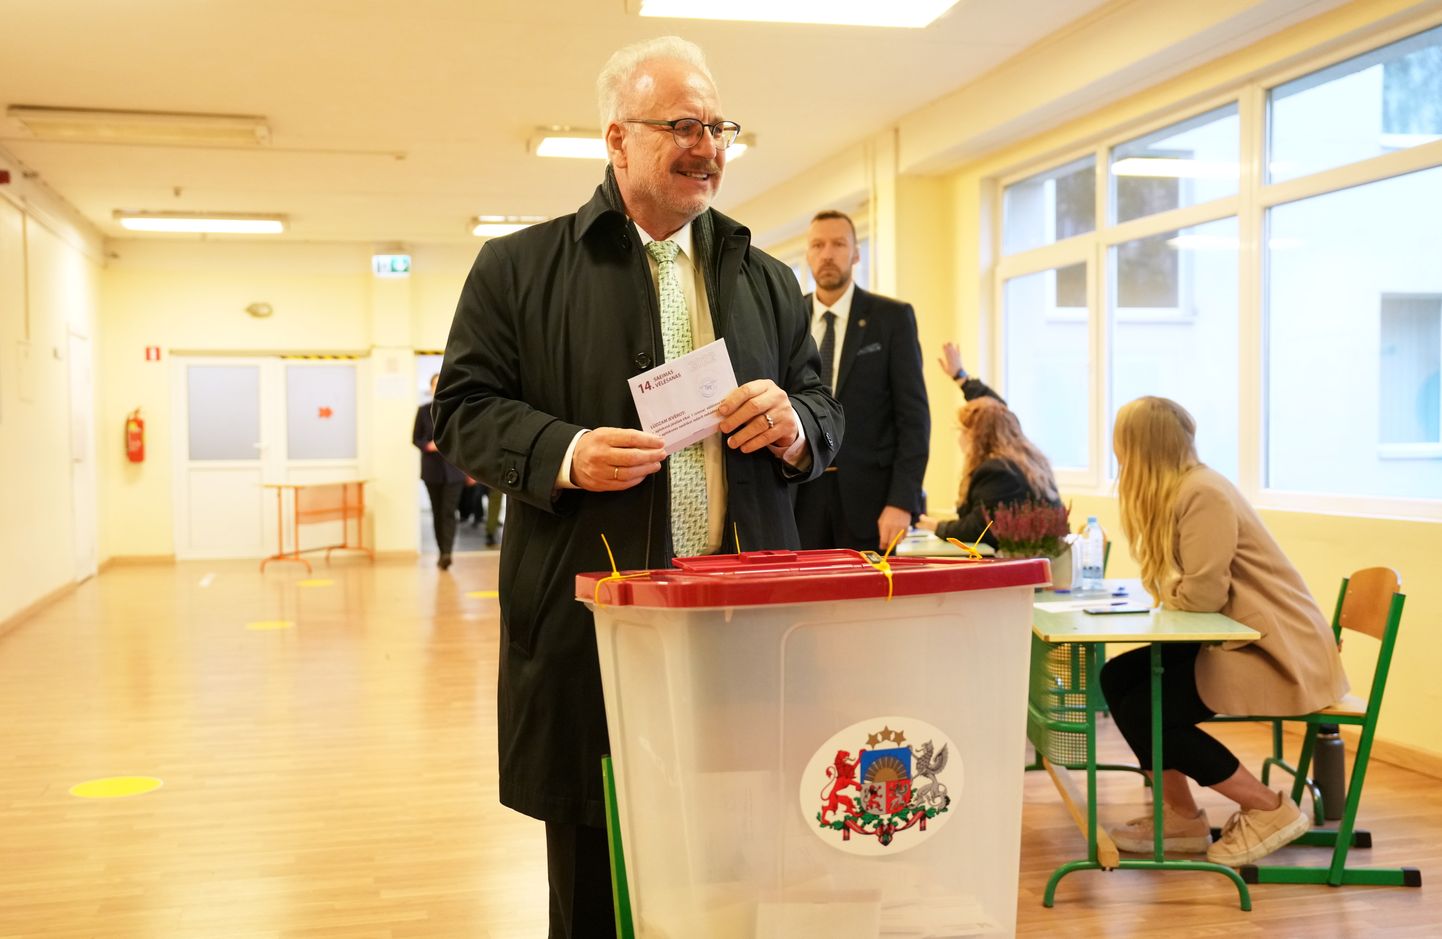 Valsts prezidents Egils Levits nodod balsi 14. Saeimas vēlēšanās 104. vēlēšanu iecirknī Rīgas Purvciema vidusskolā.